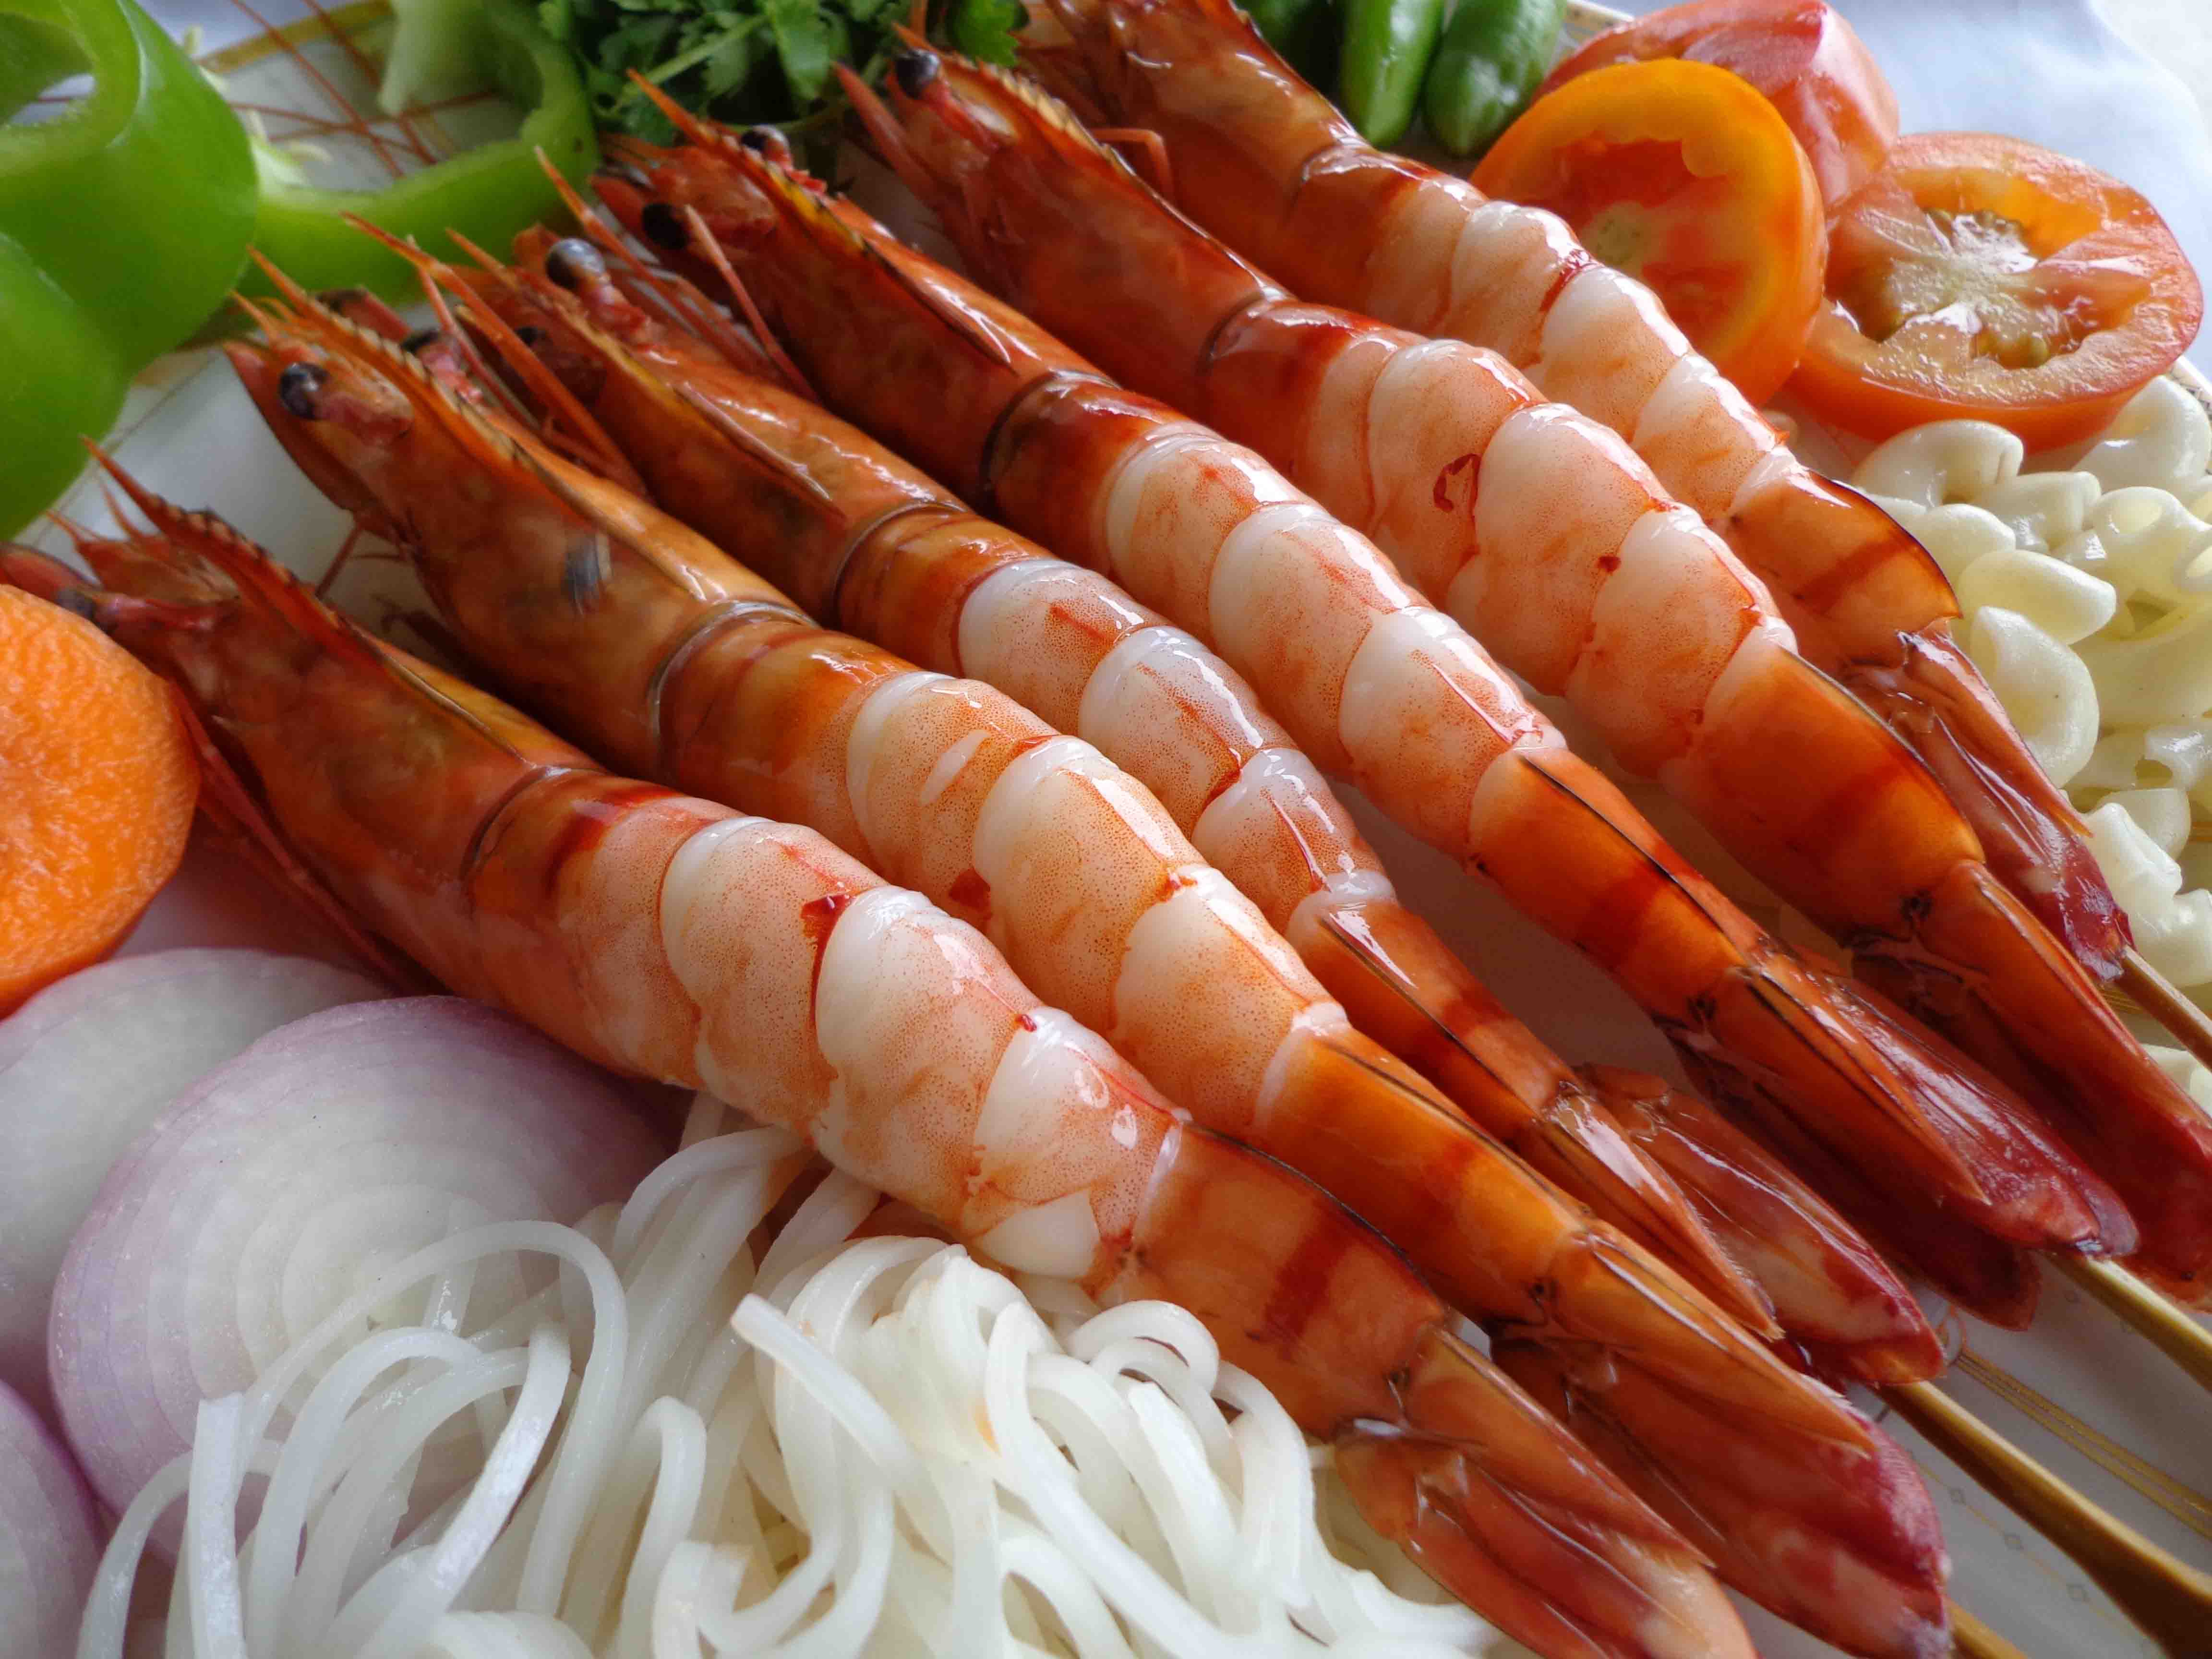 Shrimps Source International – Shrimps Source International